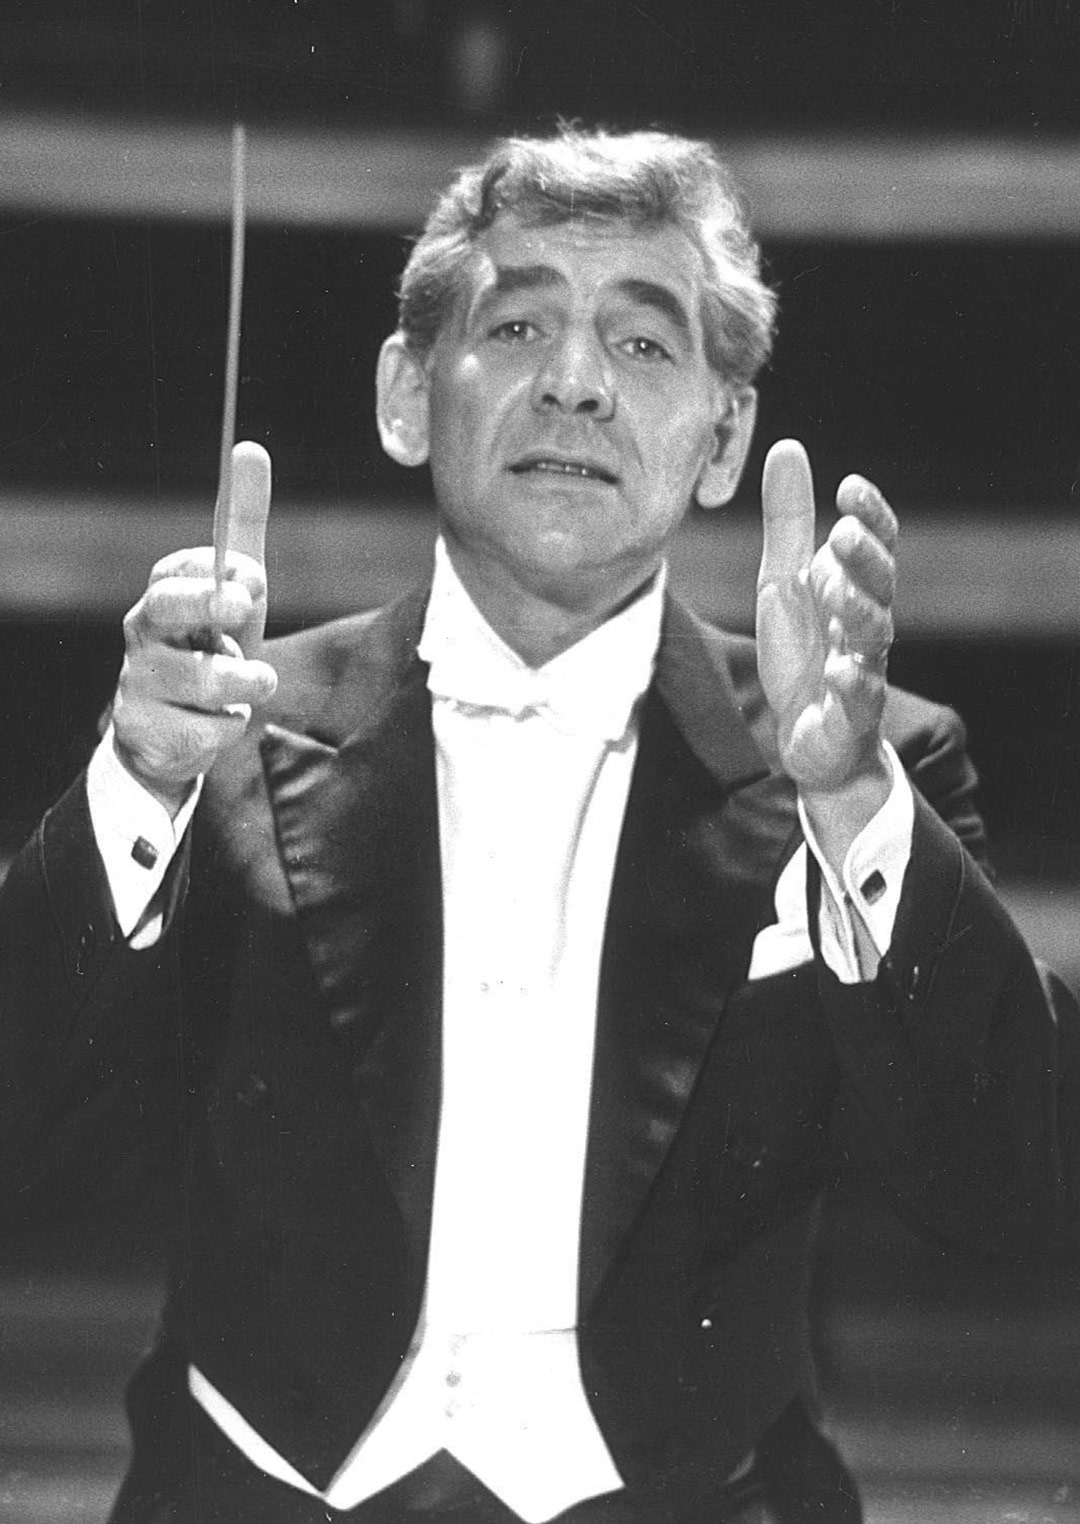 Bernstein